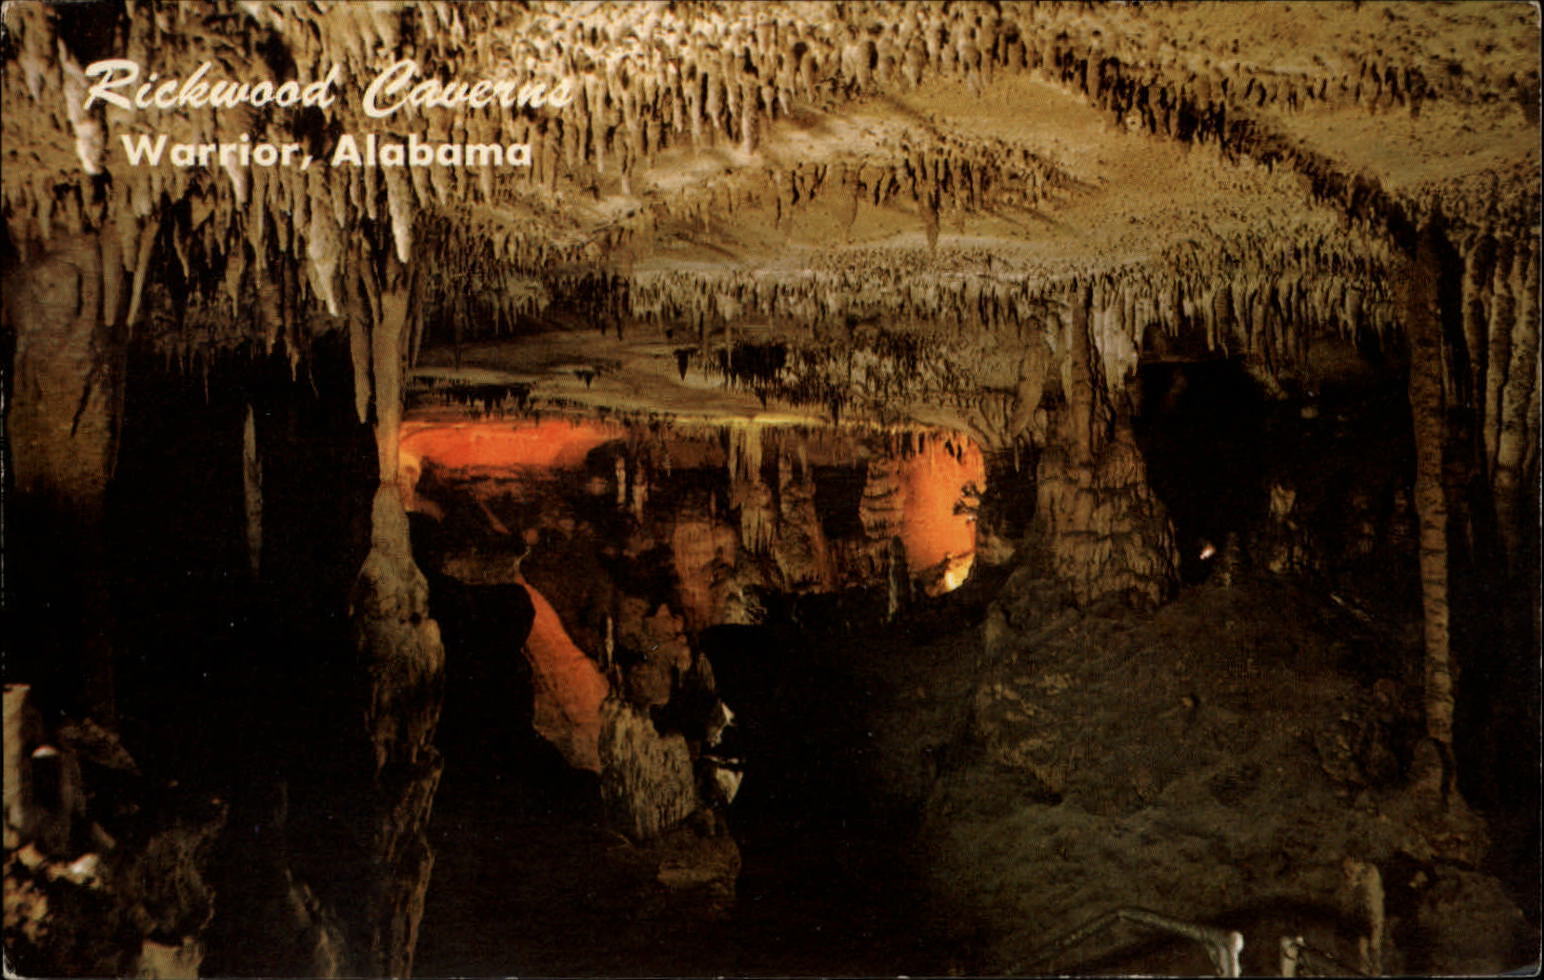 Warrior Alabama Richwood Caverns stalactite formations unused vintage postcard